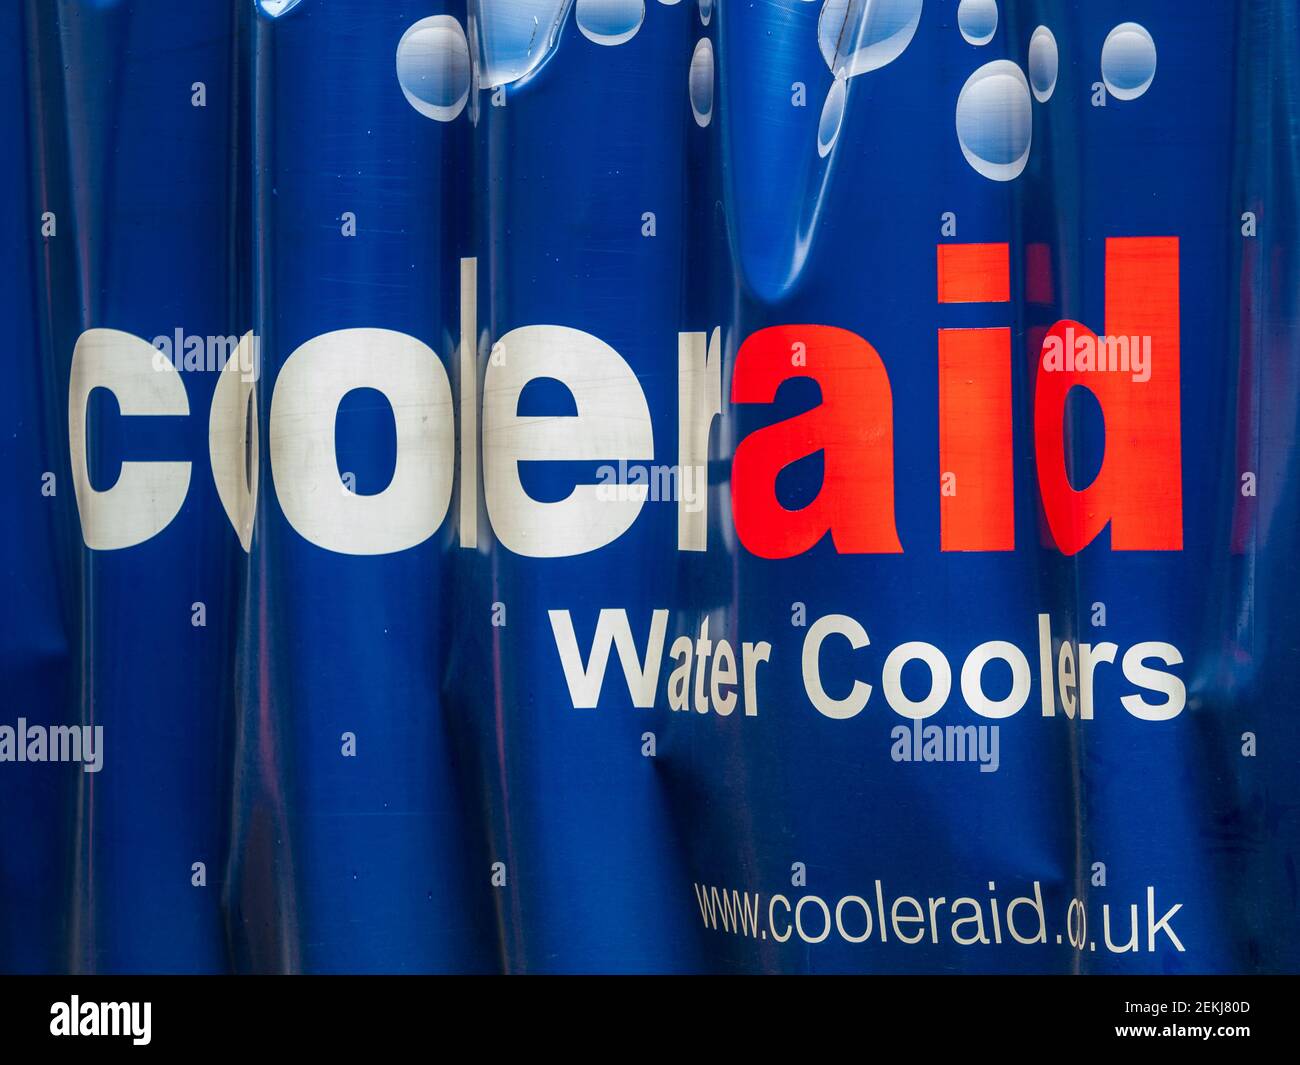 Cooleraid Ltd Logo auf einer Lieferwagen-Plane - Cooleraid ist ein führender britischer Lieferant von Wasserkühlern und Zapfsäulen. Voraussichtlich 1993. Stockfoto